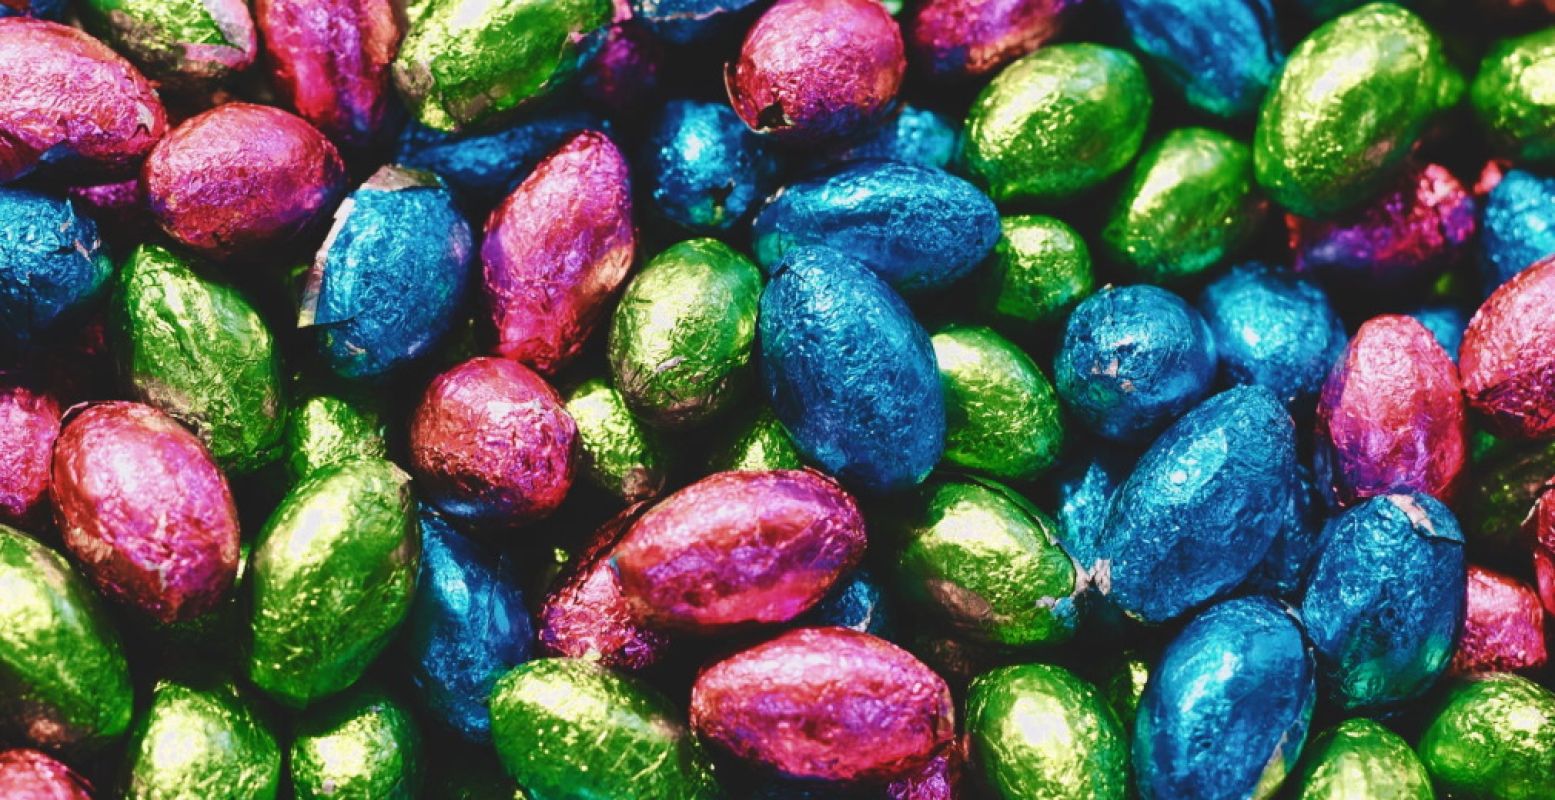 Eieren verstoppen, beschilderen, opeten. Maar dan net even anders... Thuisblijven met Pasen hoeft niet saai te zijn! Foto: Pexels.com.